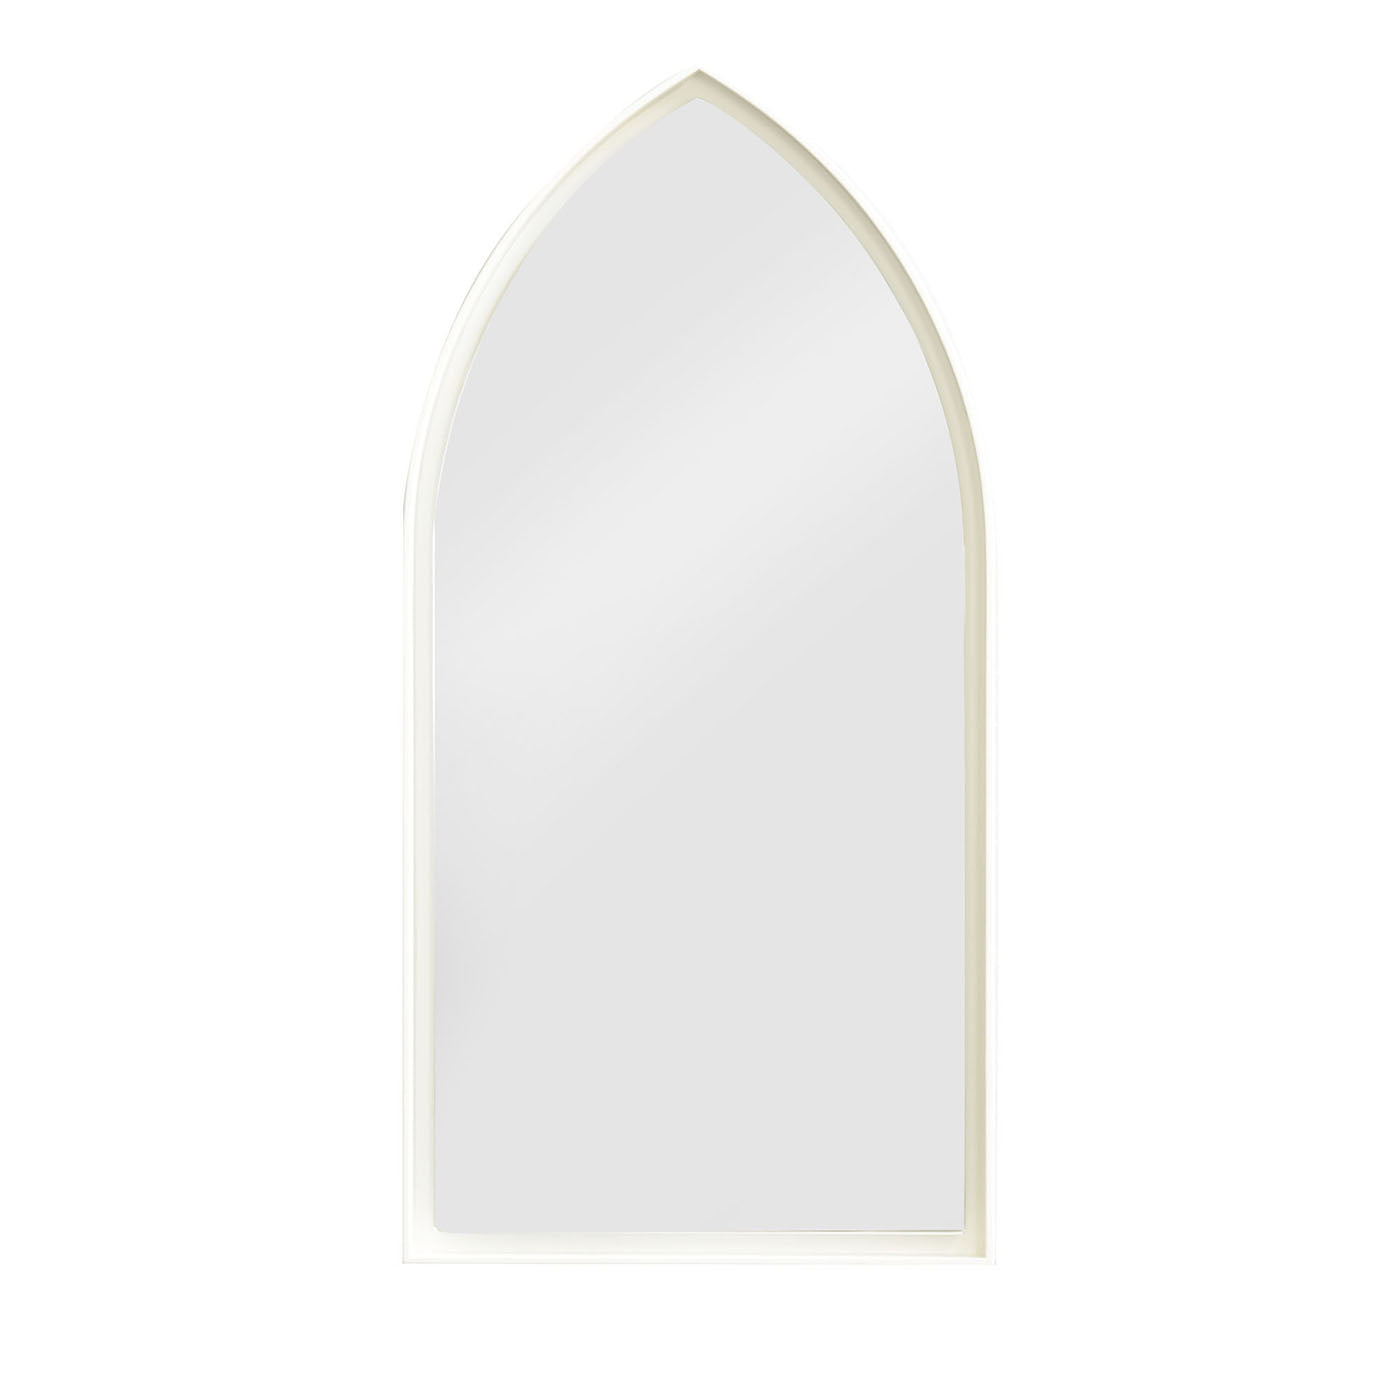 Panorami Miroir blanc gothique par Zaven  - Vue principale